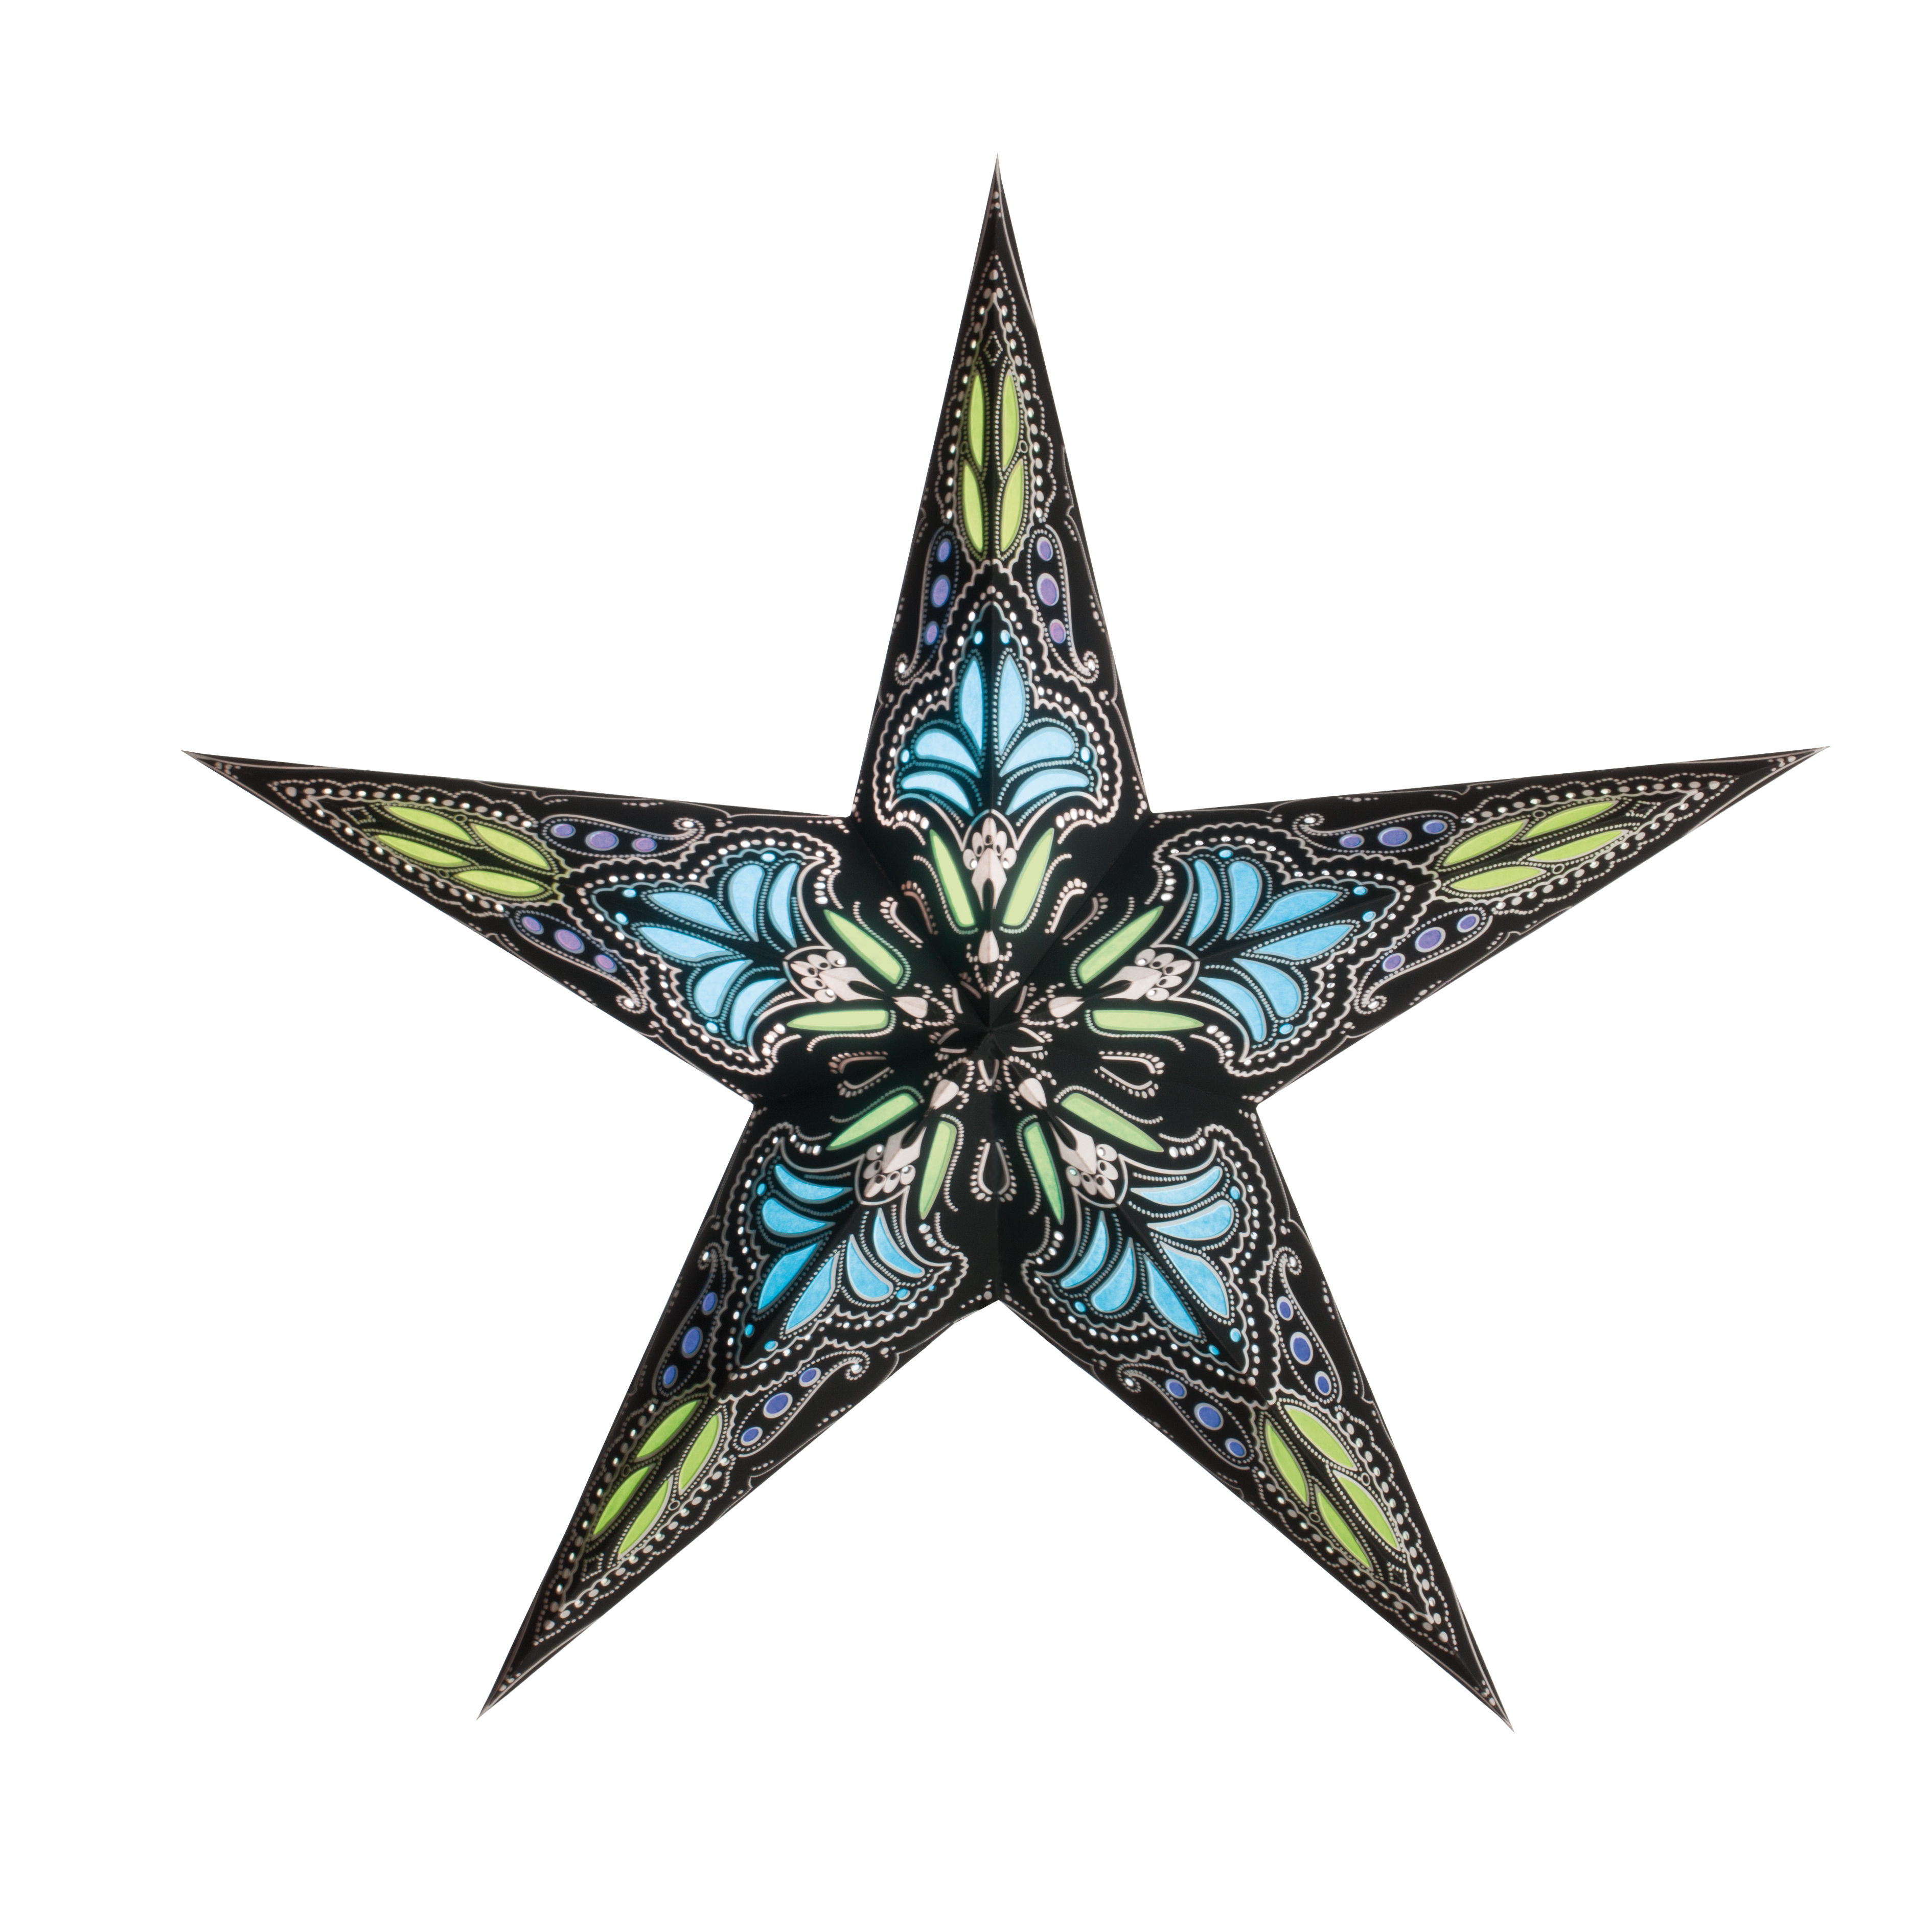 Earth Friendly Starlightz Weihnachtsstern jaipur small black/turquoise, D45cm, 5 Zacken, Papierstern, Leuchtstern, Handarbeit, 4046833301187